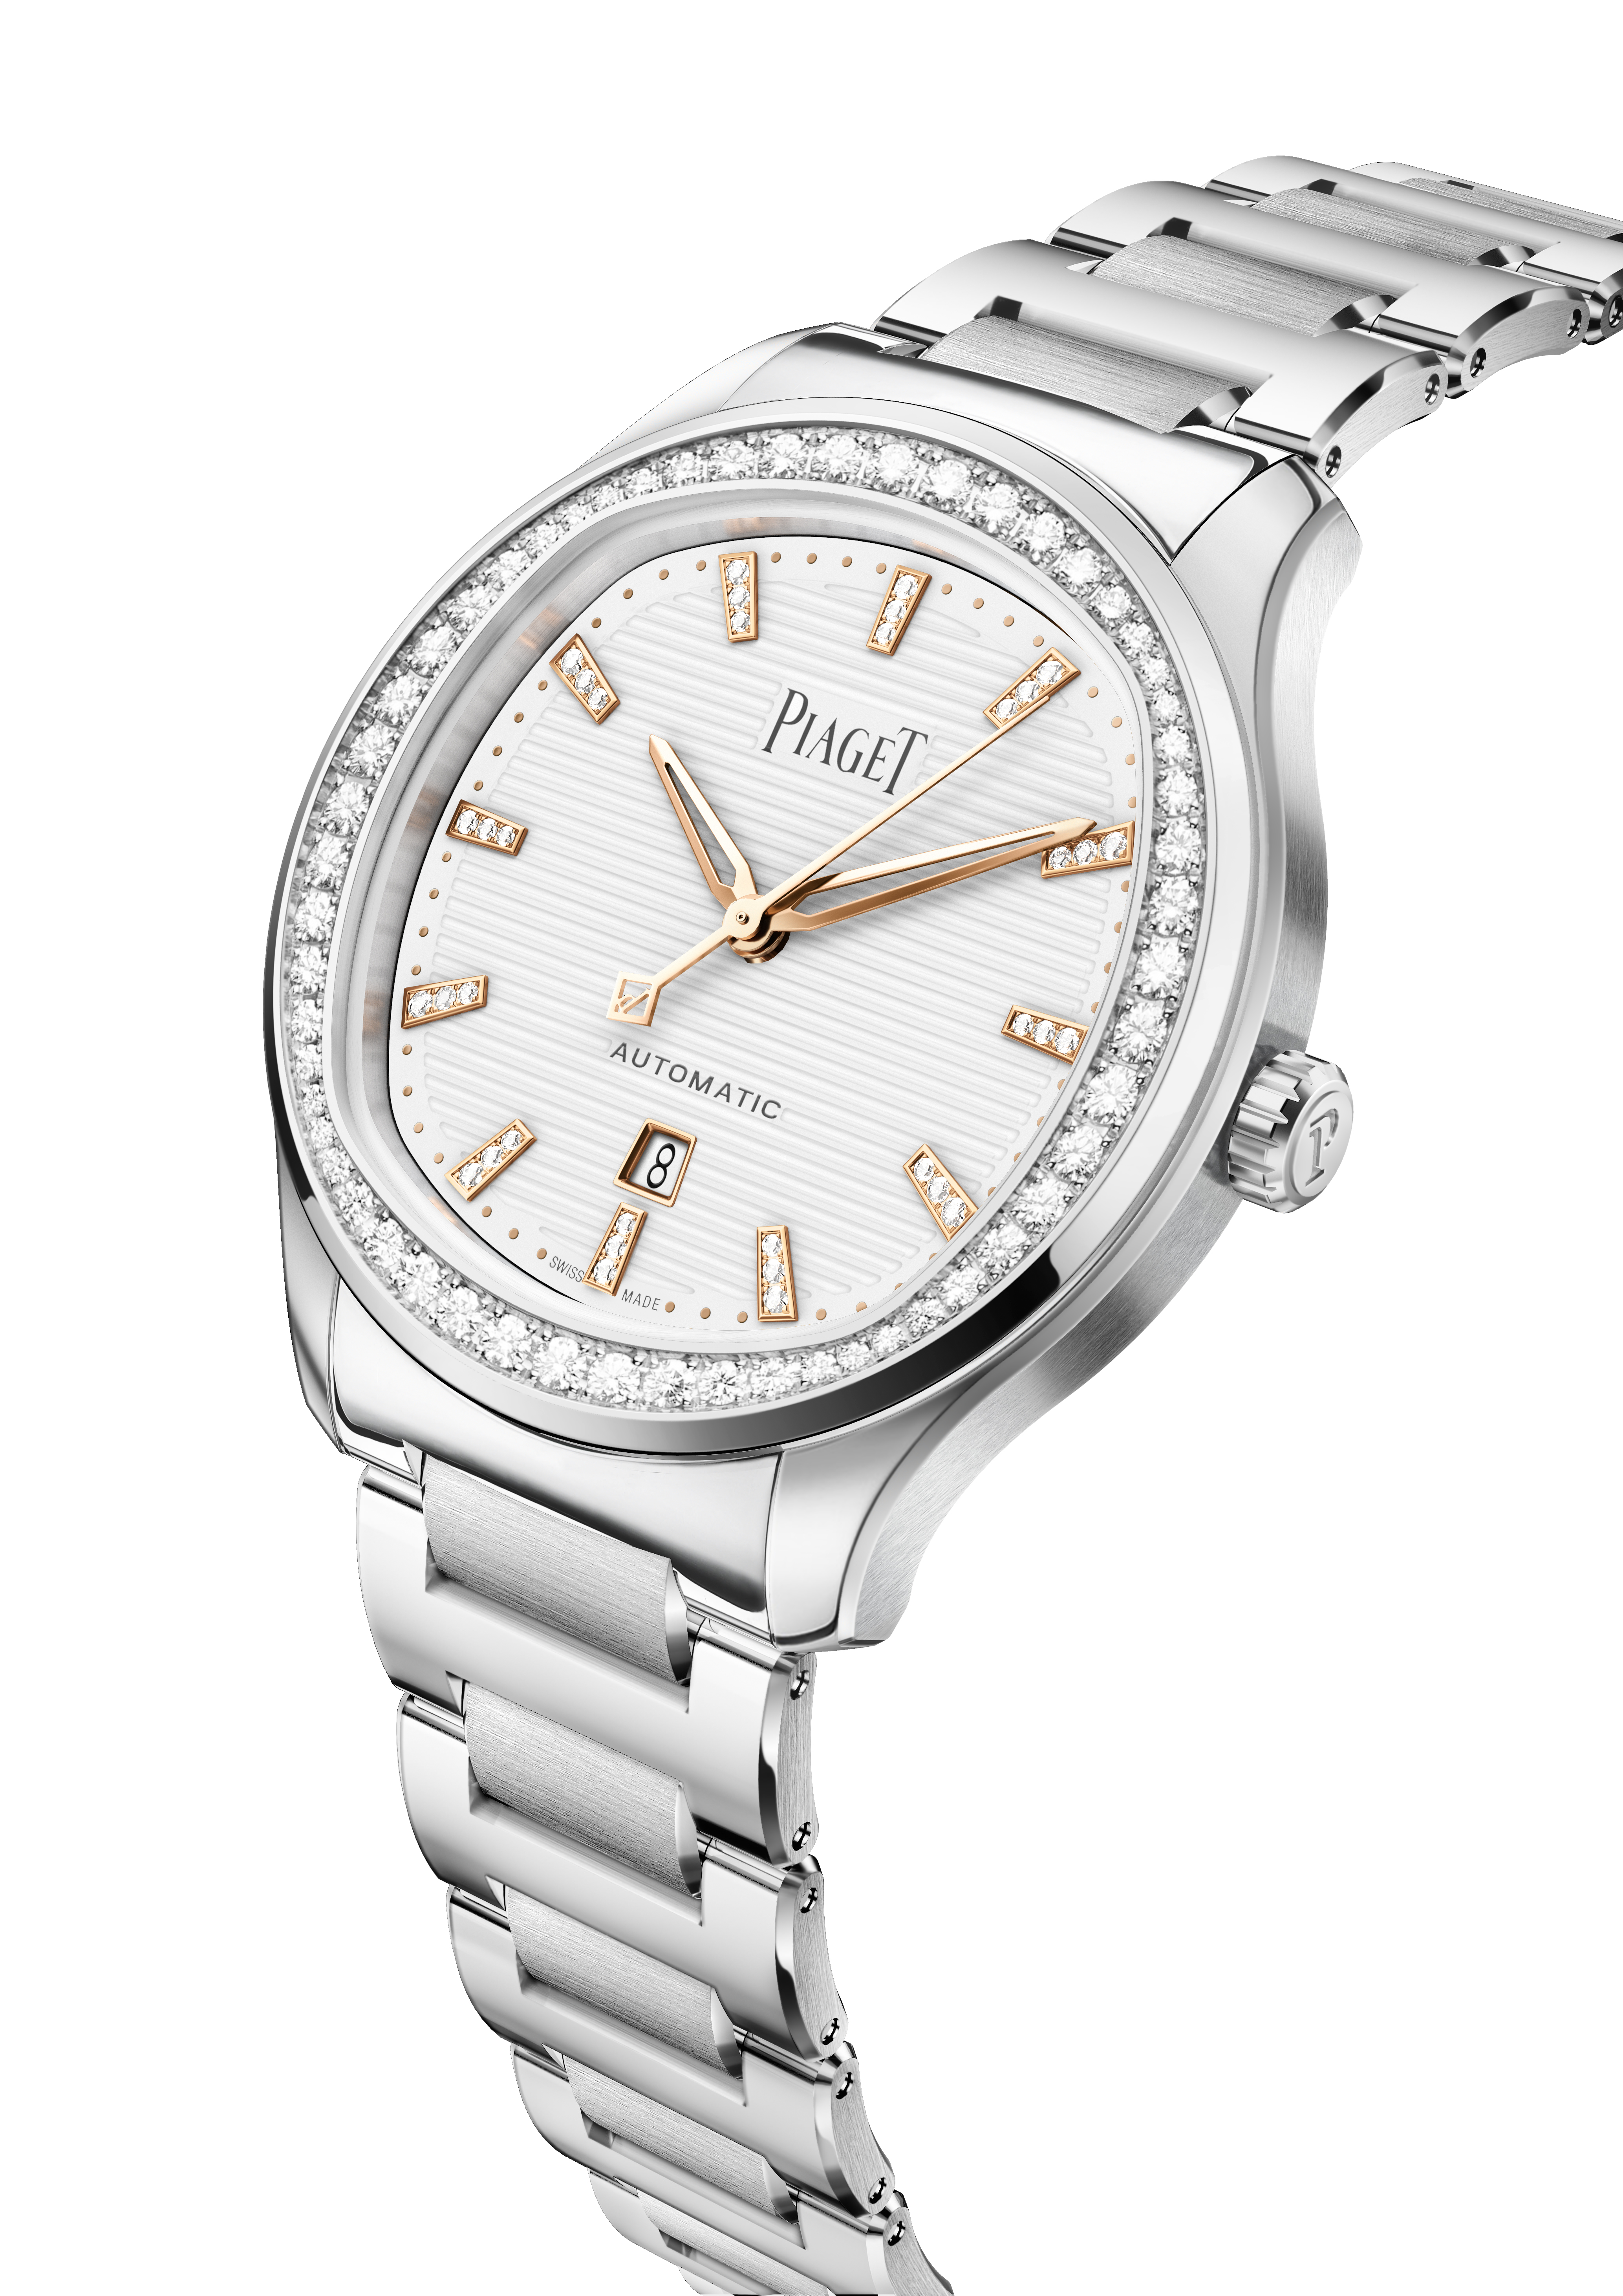 Đã xuất hiện chiếc đồng hồ nữ đầu tiên trong BST Piaget Polo lịch sử - Ảnh 6